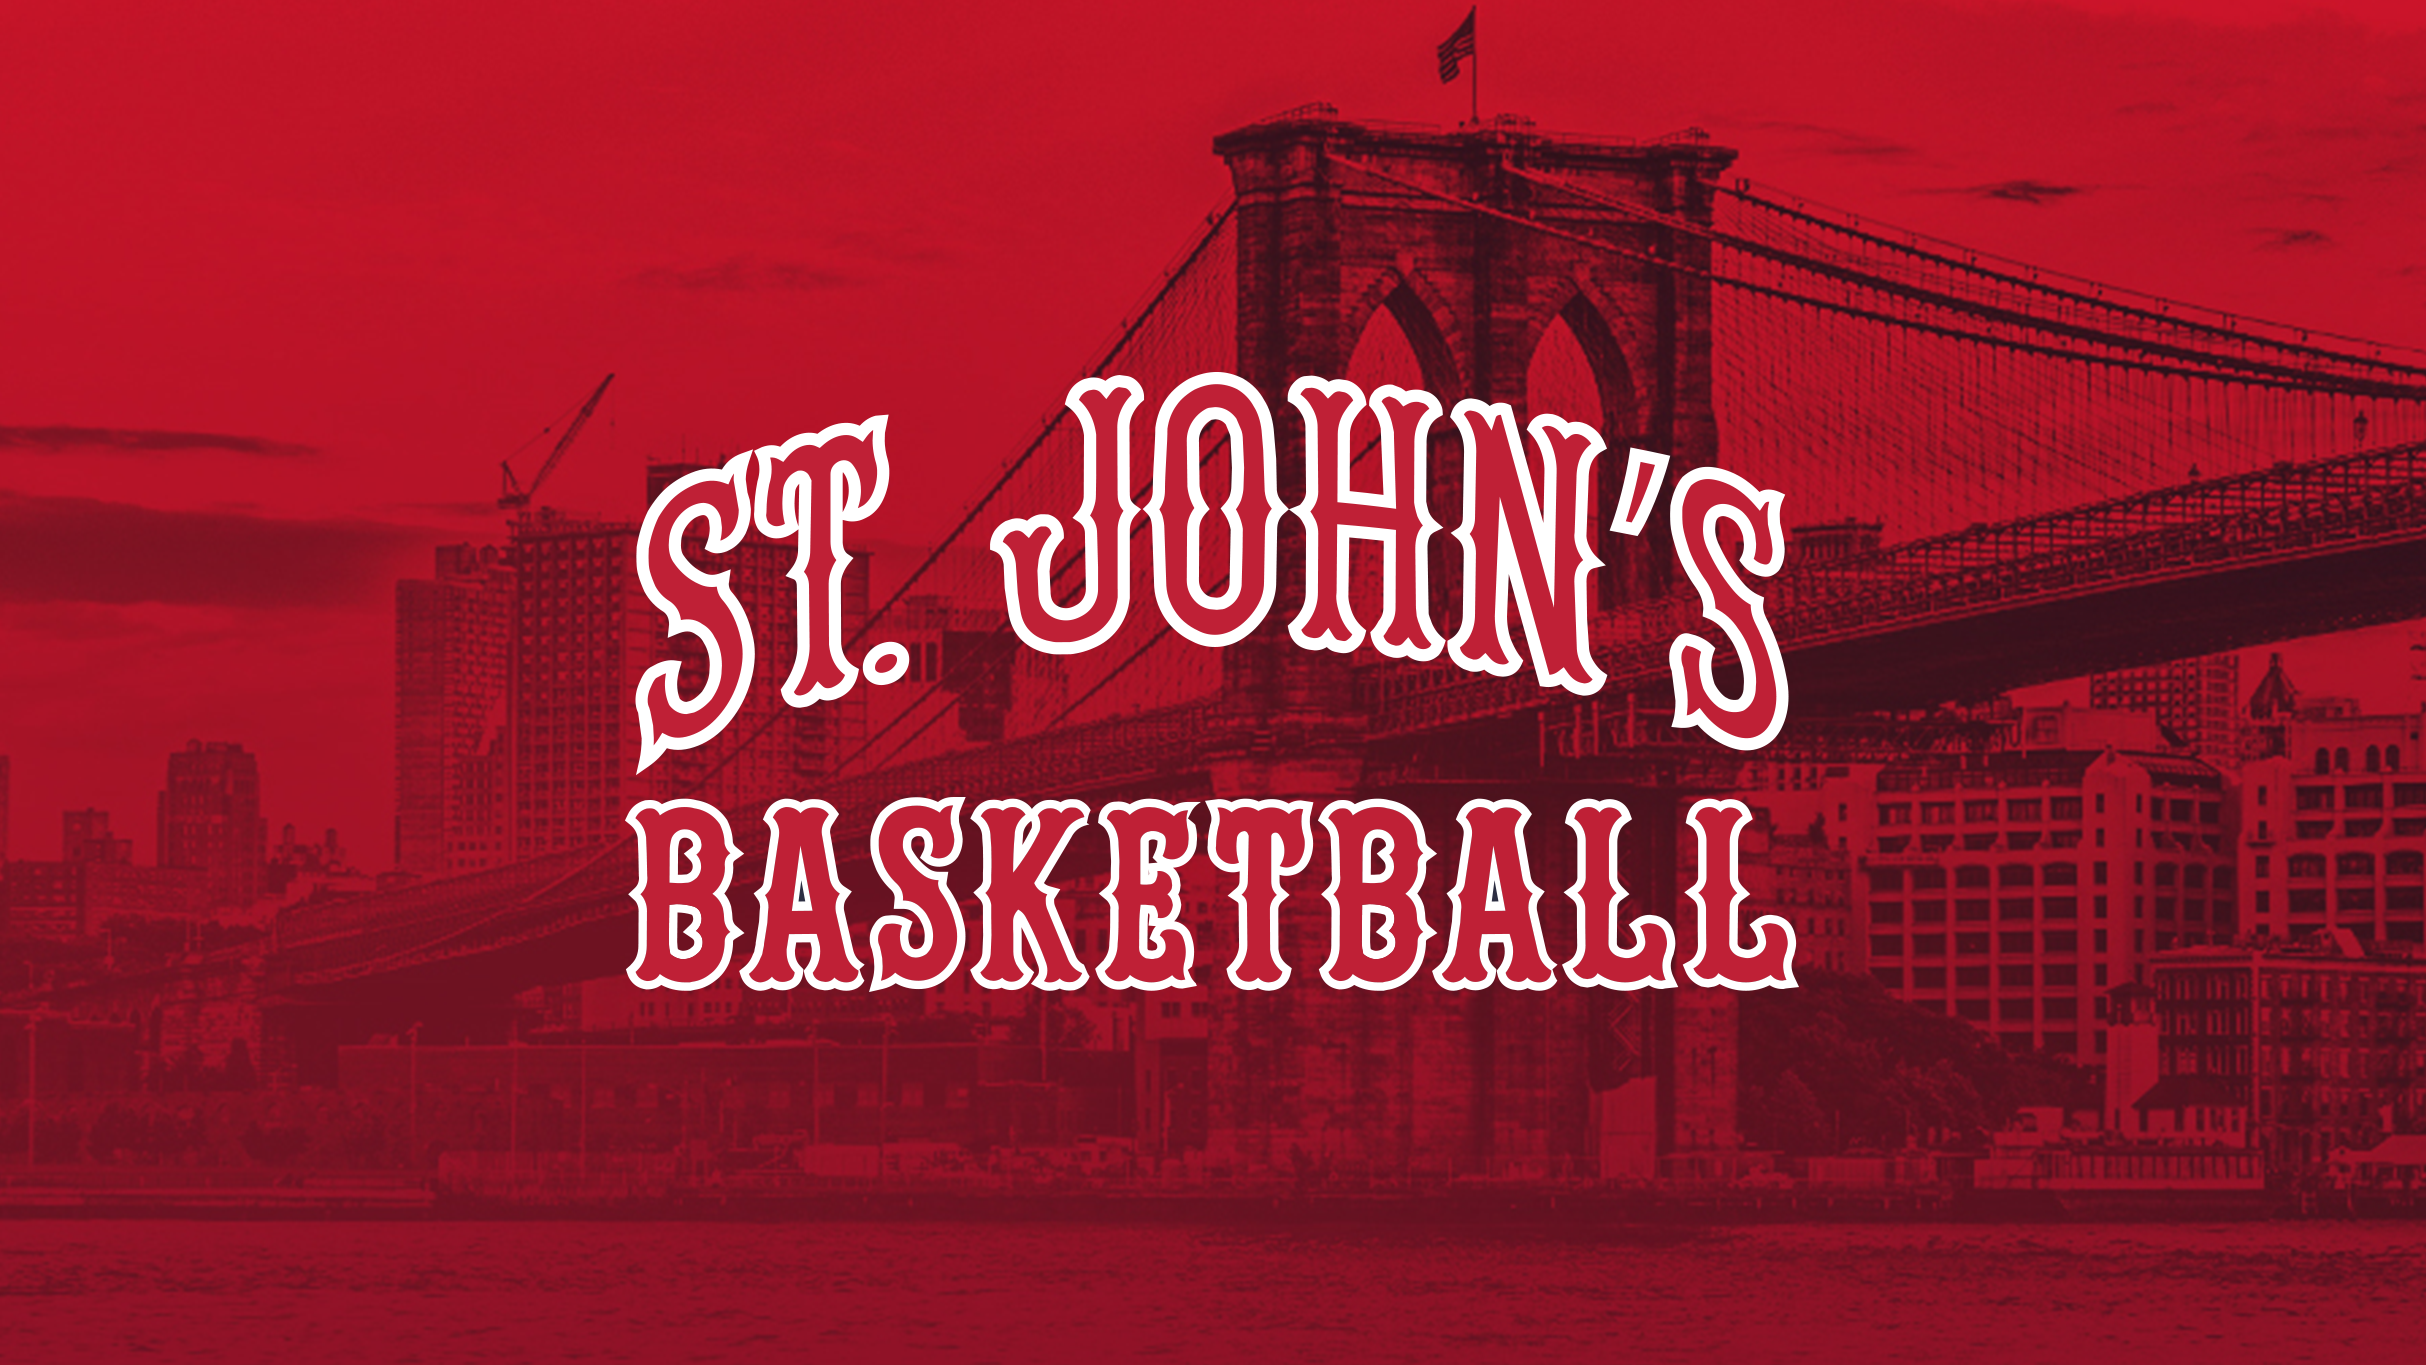 St. John's Red Storm Men's Basketball V. UConn in New York promo photo for Venue presale offer code